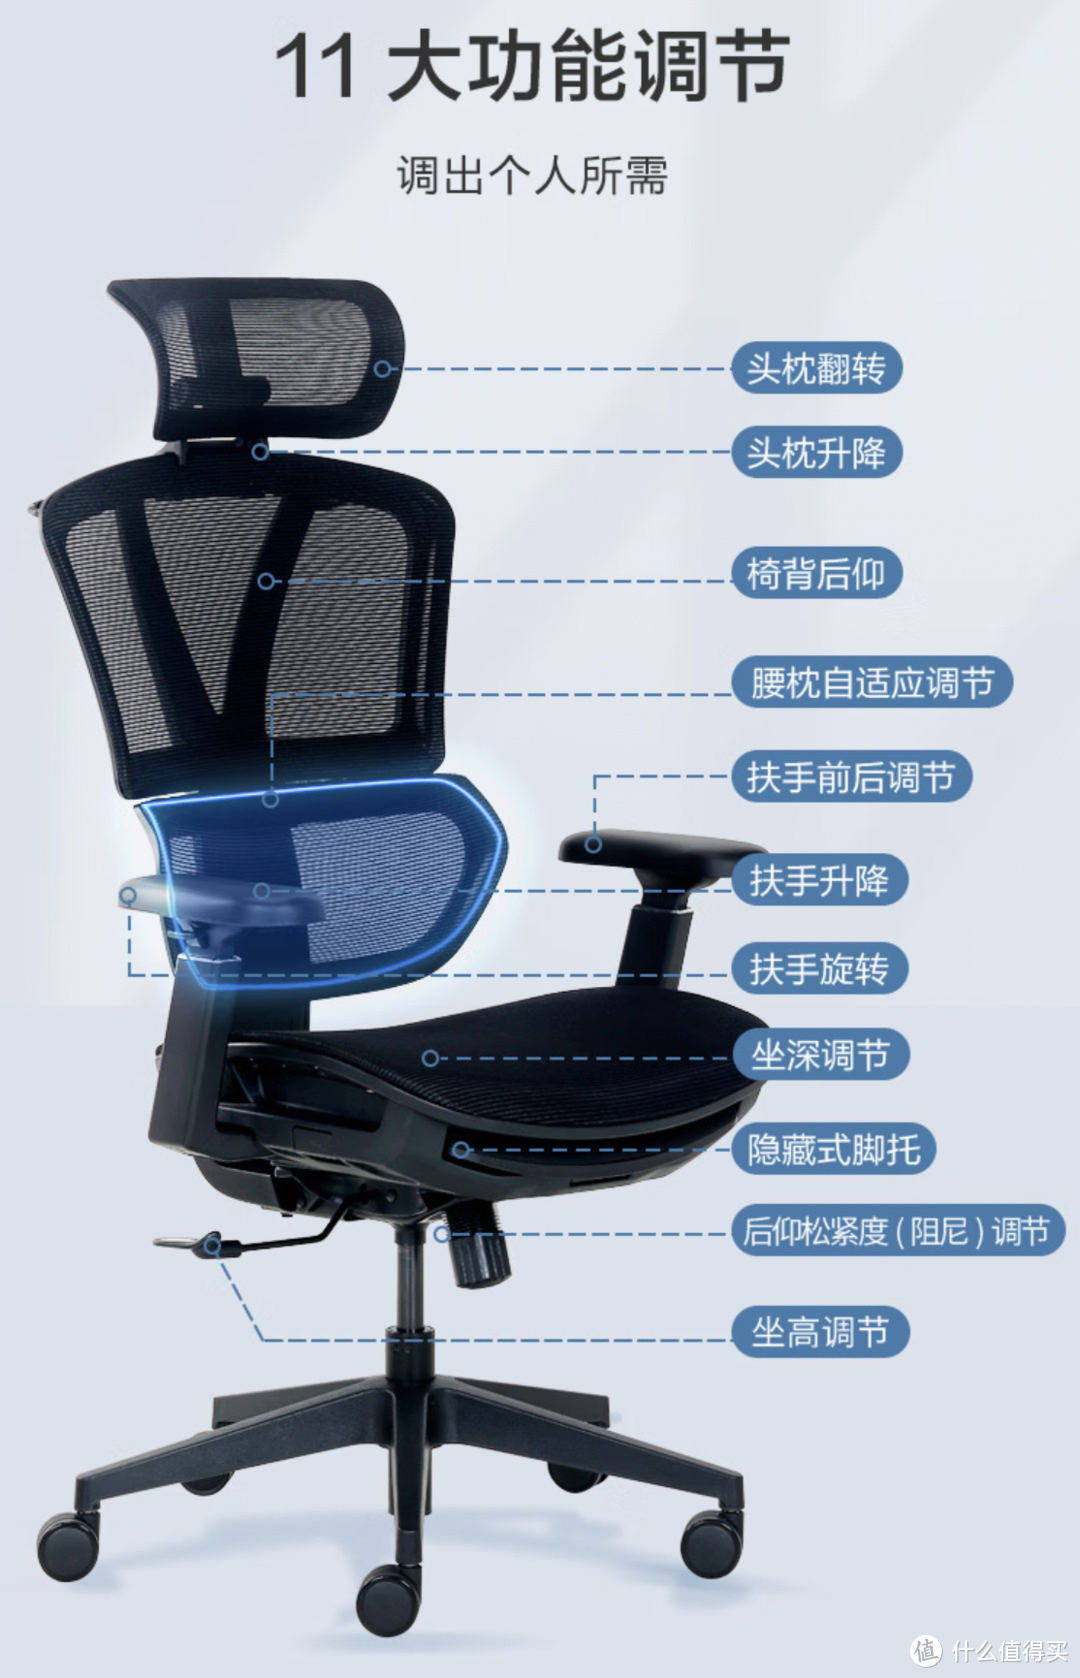 京造Z9S,bug操作6百给女票拿下性价比最高人体工学椅